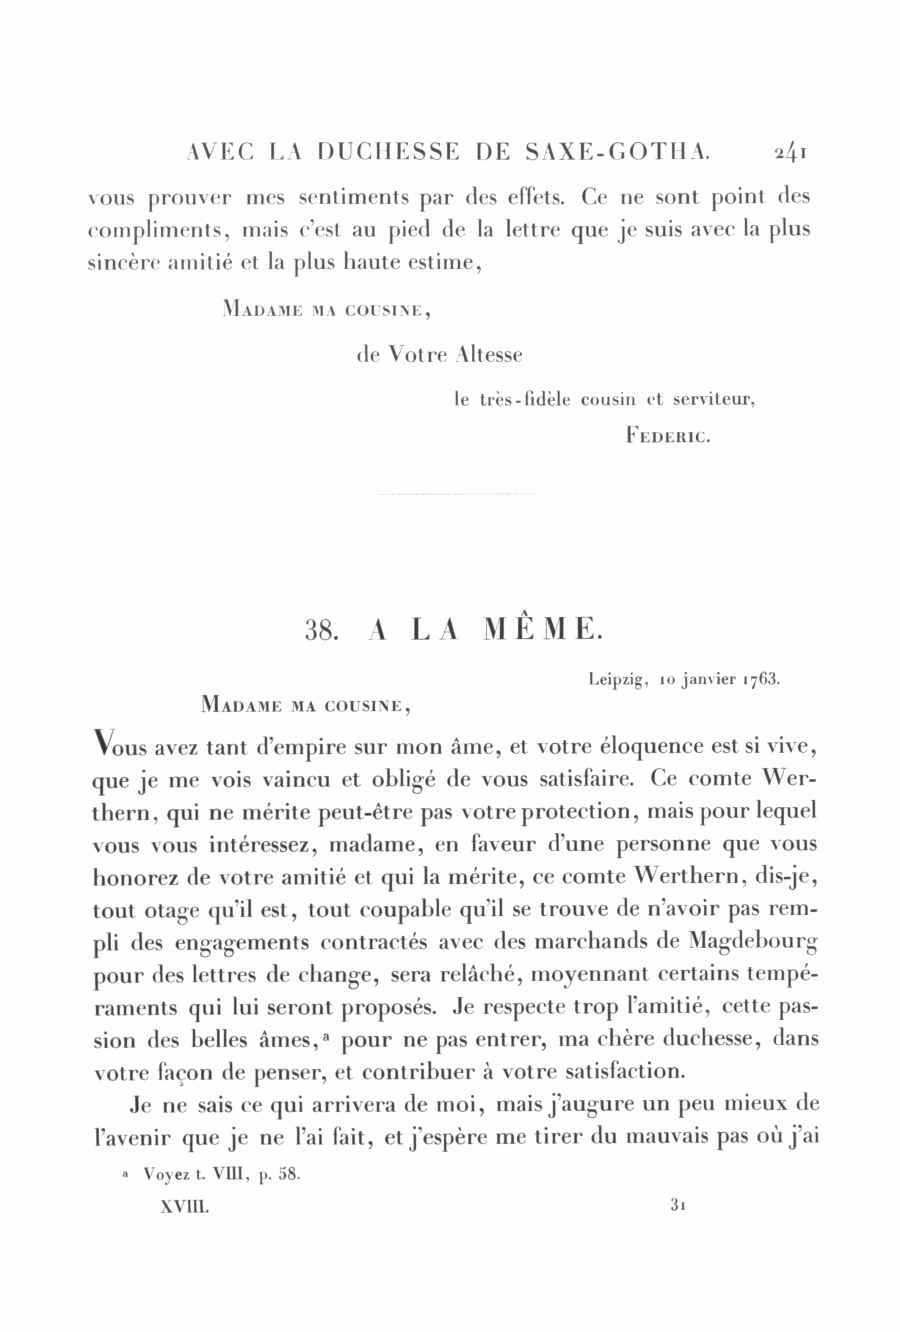 S. 241, Obj. 2